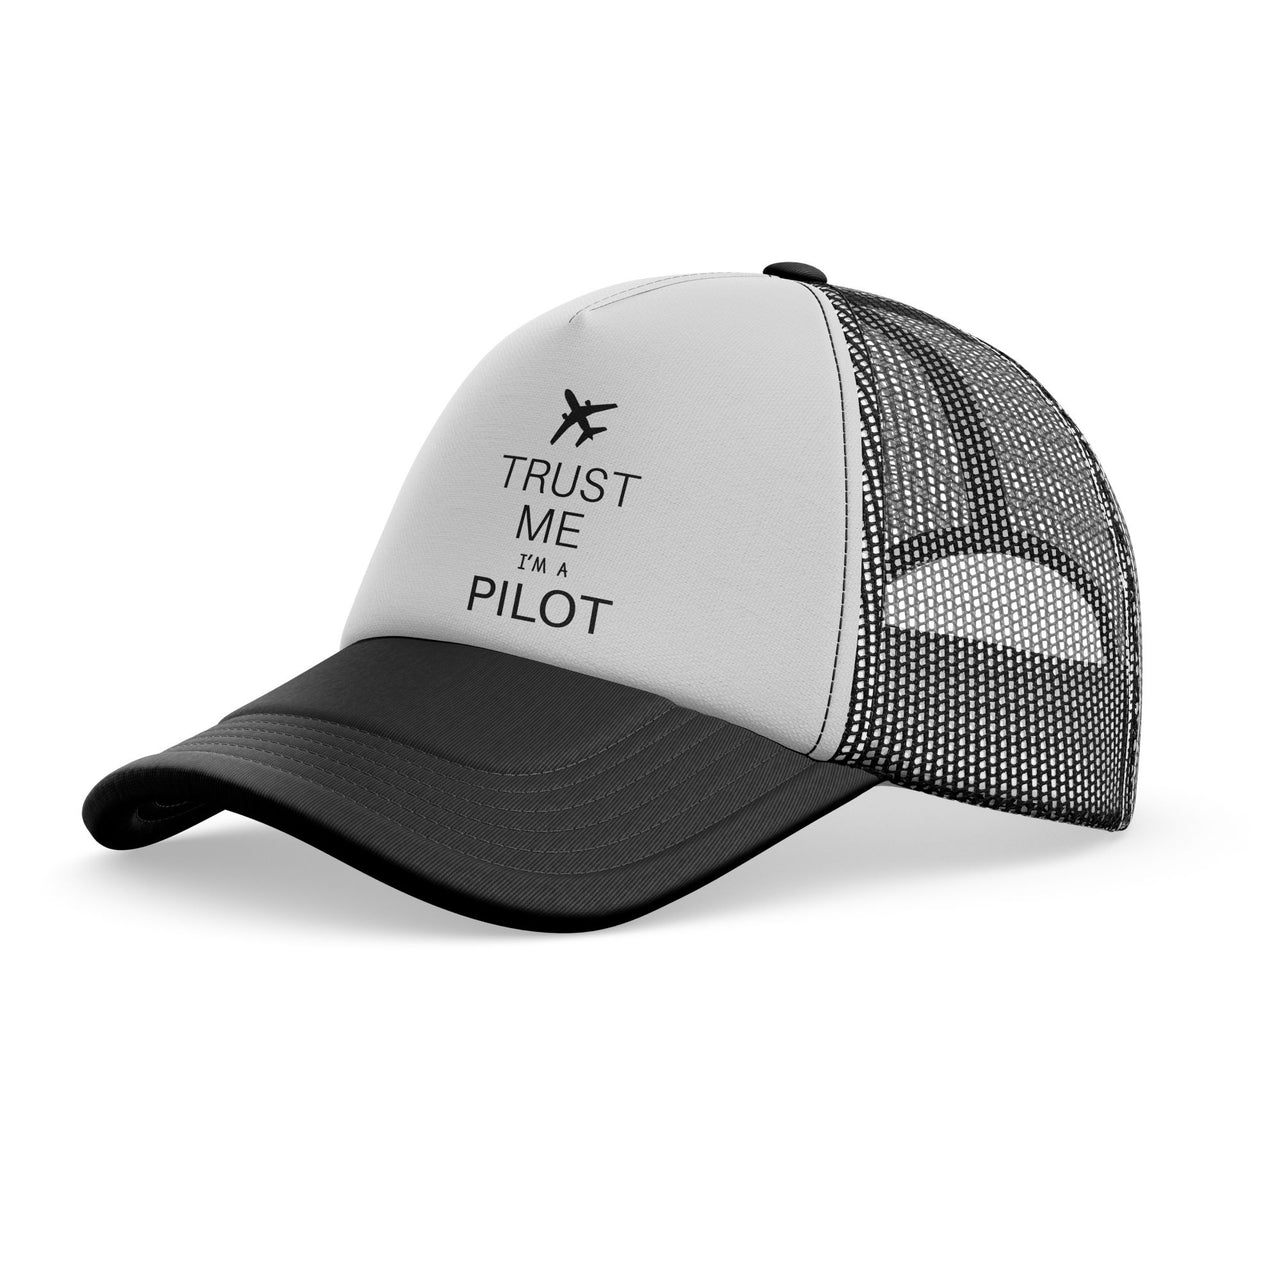 Trust Me I'm a Pilot 2 Designed Trucker Caps & Hats